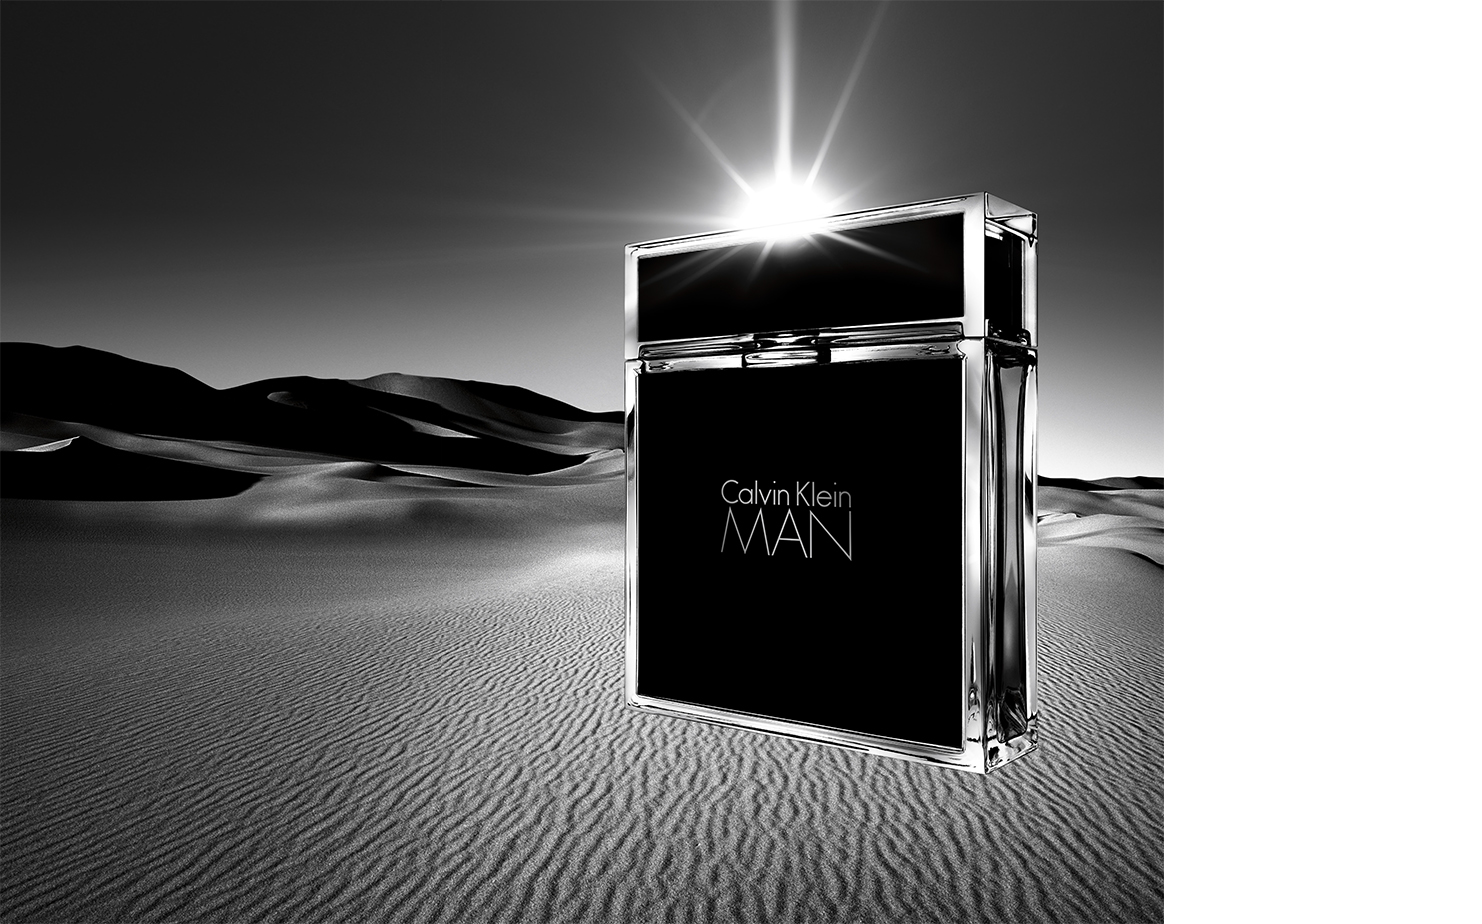   Calvin Klein   AGENCY Baron + Baron CREATIVE DIRECTOR Fabien Baron 